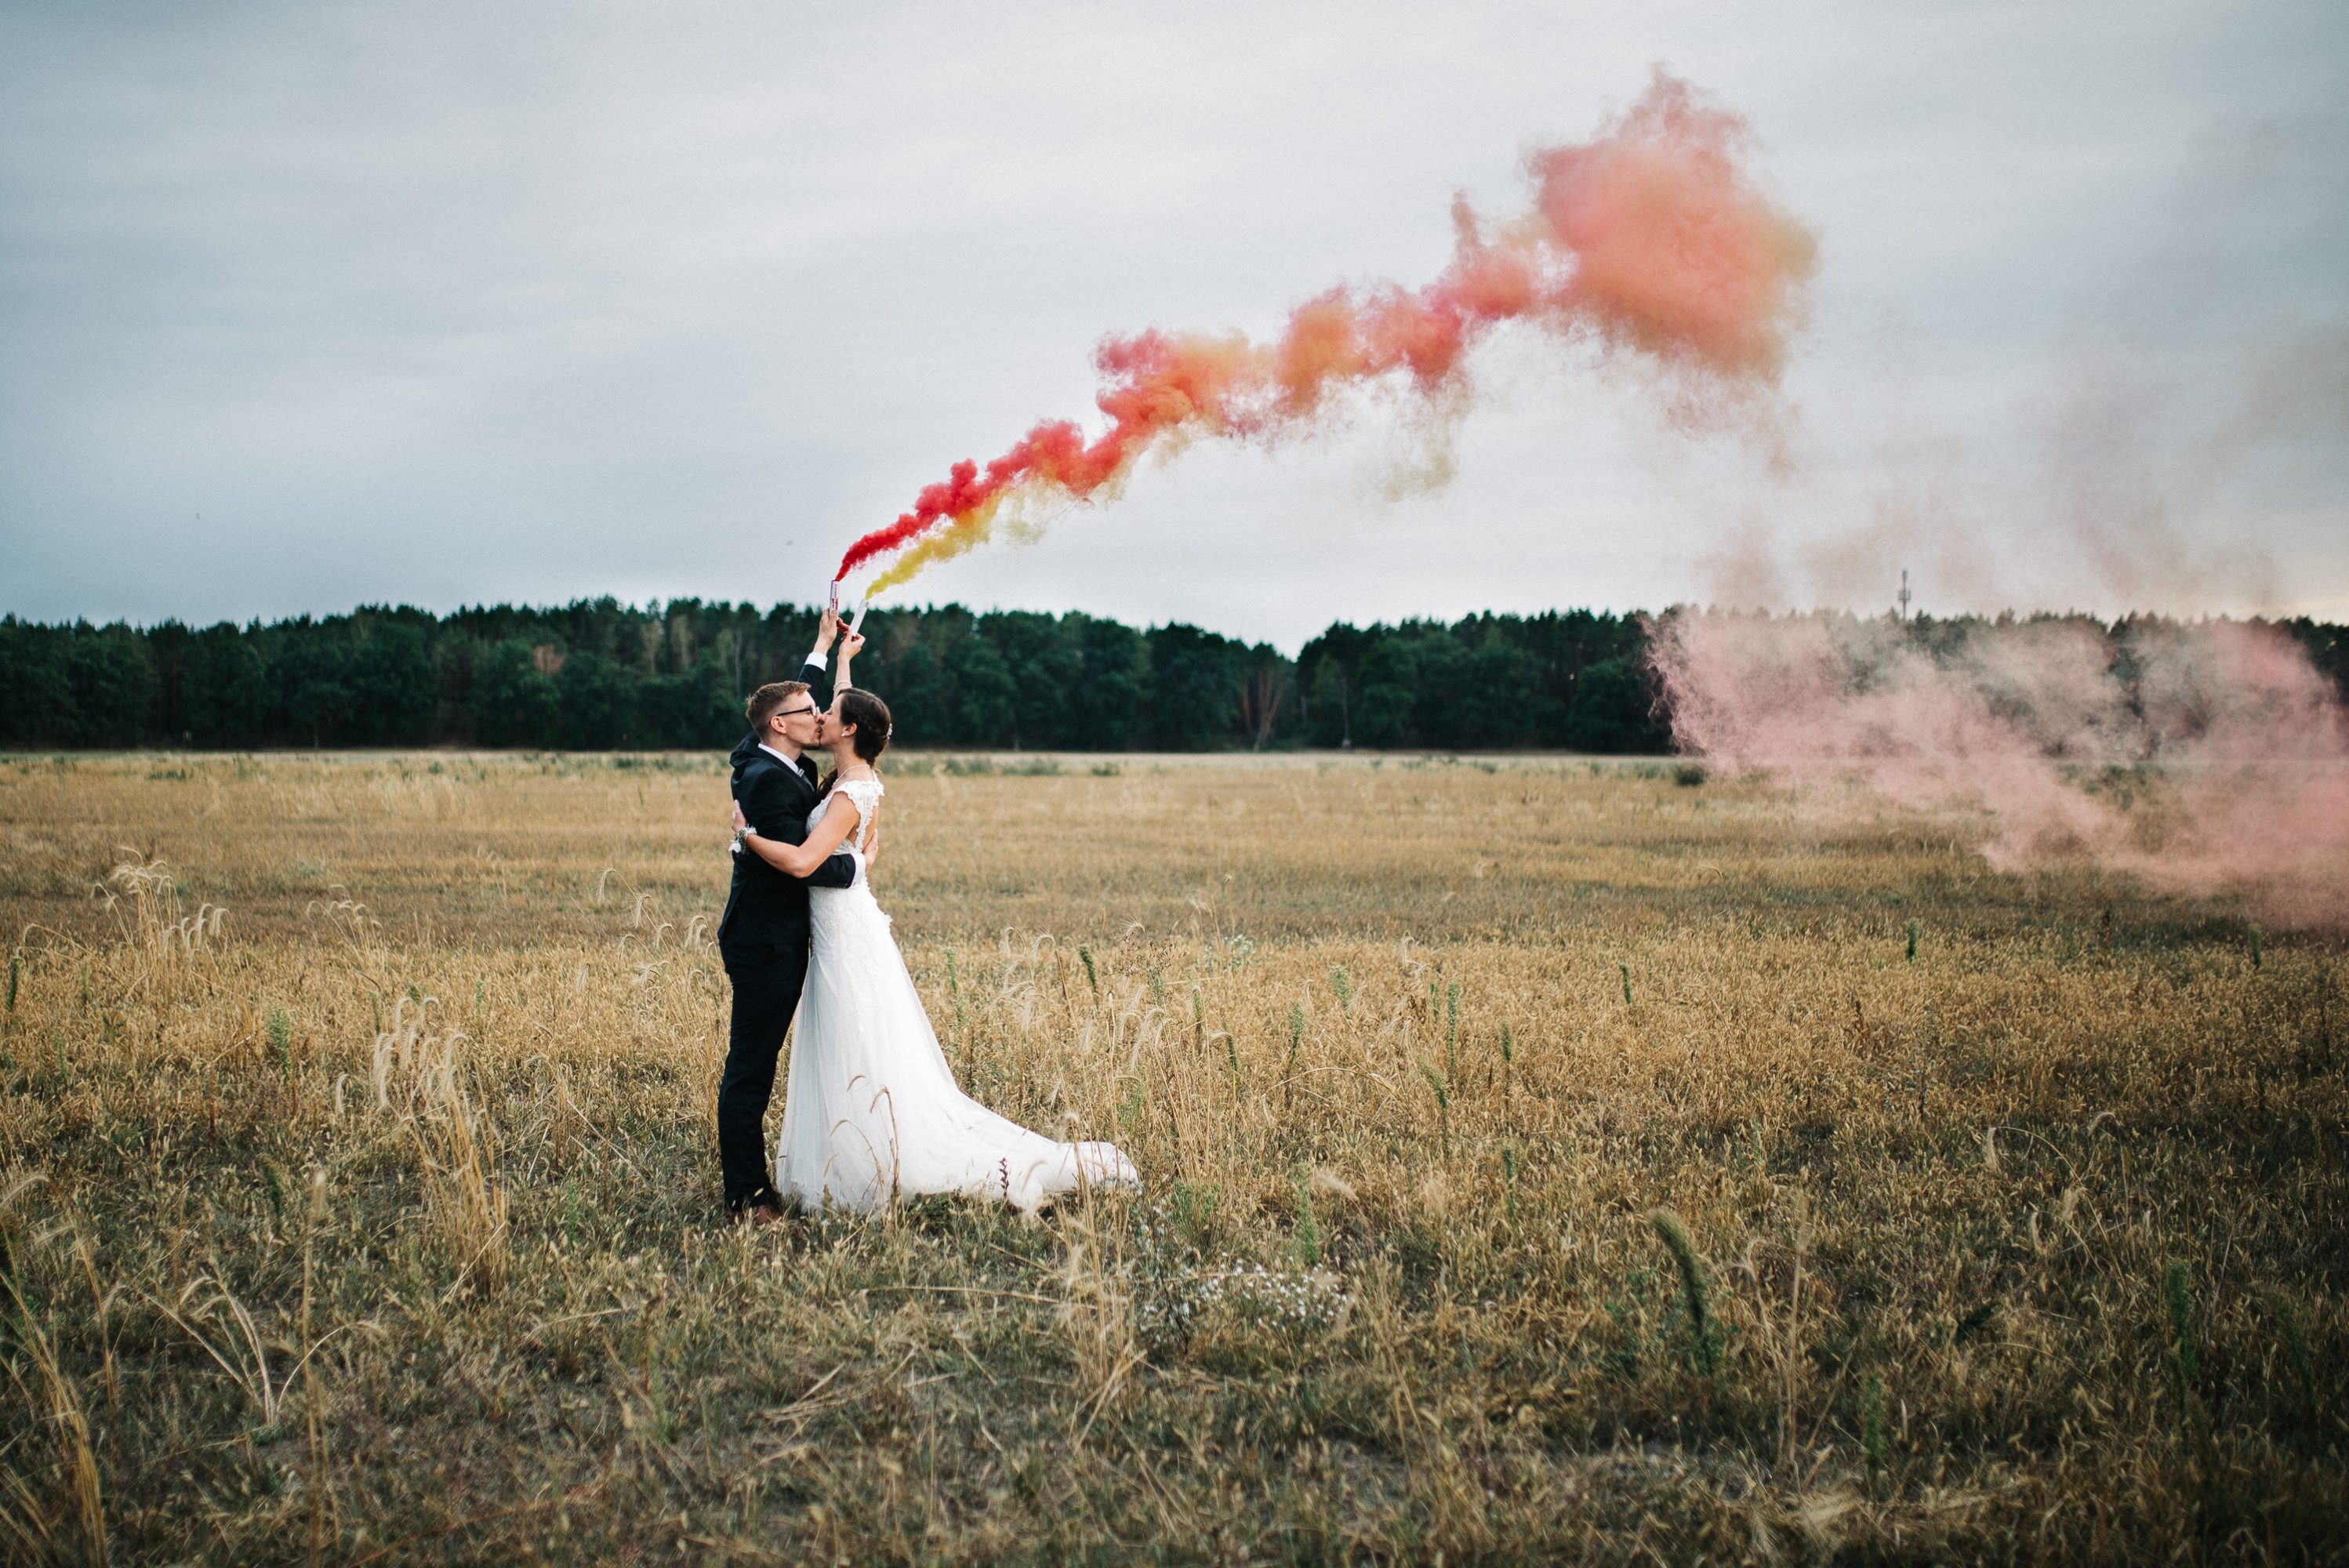 Hochzeitspaar mit Rauchbombe - Herzklopfreportagen by Steven Ritzer